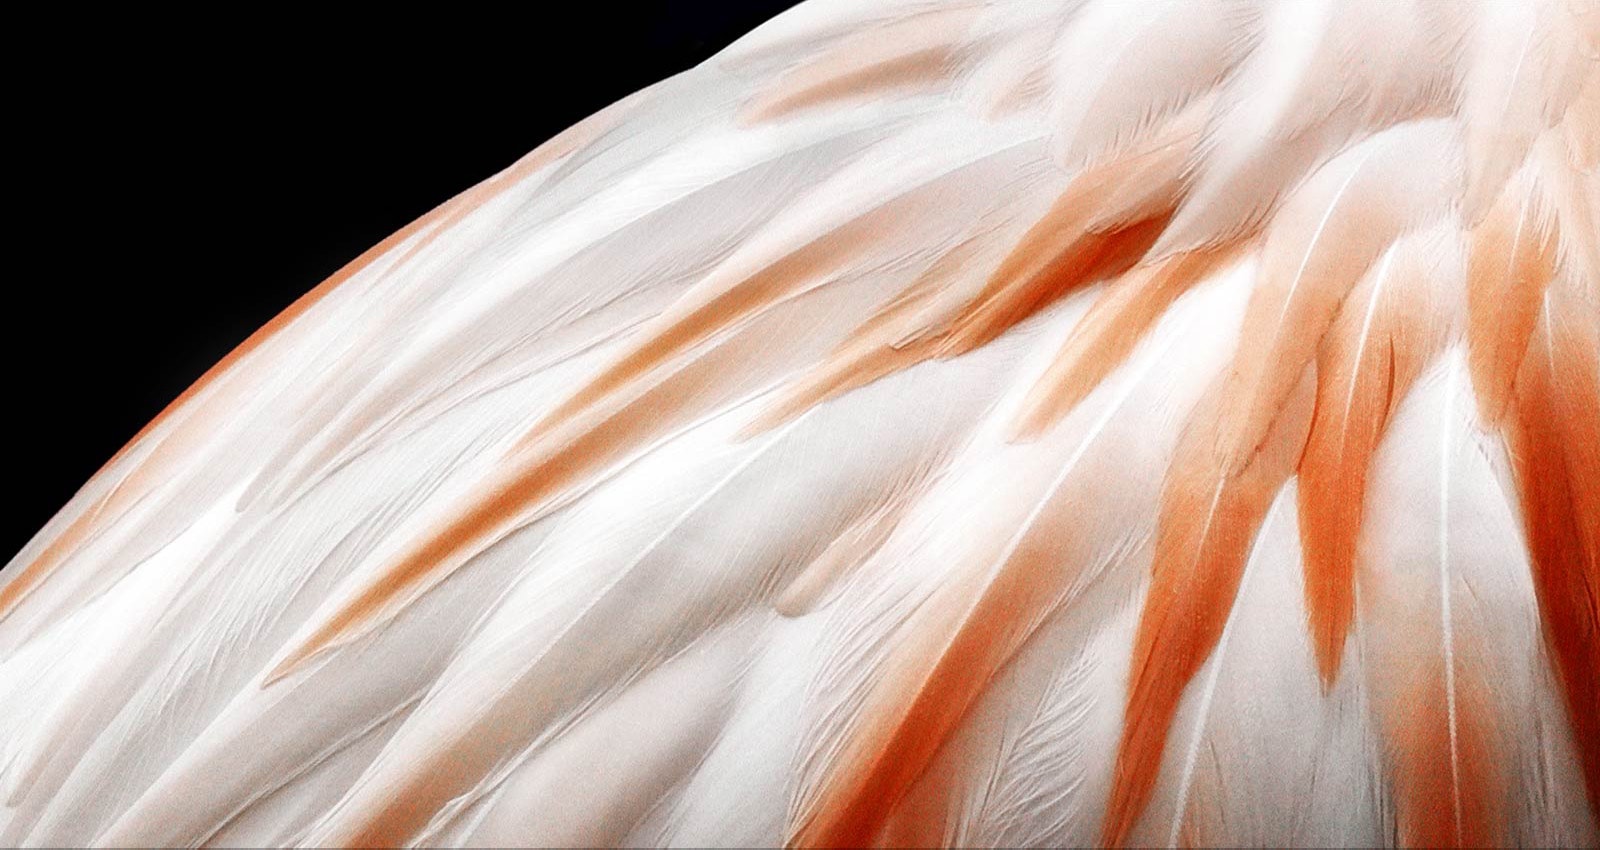 Ένα βίντεο που δείχνει 2 εικόνες των φτερών ενός πουλιού δίπλα-δίπλα. Η πλευρά που αναπαριστά το Brightness Booster εμφανίζεται φωτεινότερη και, στη συνέχεια, γεμίζει την οθόνη.